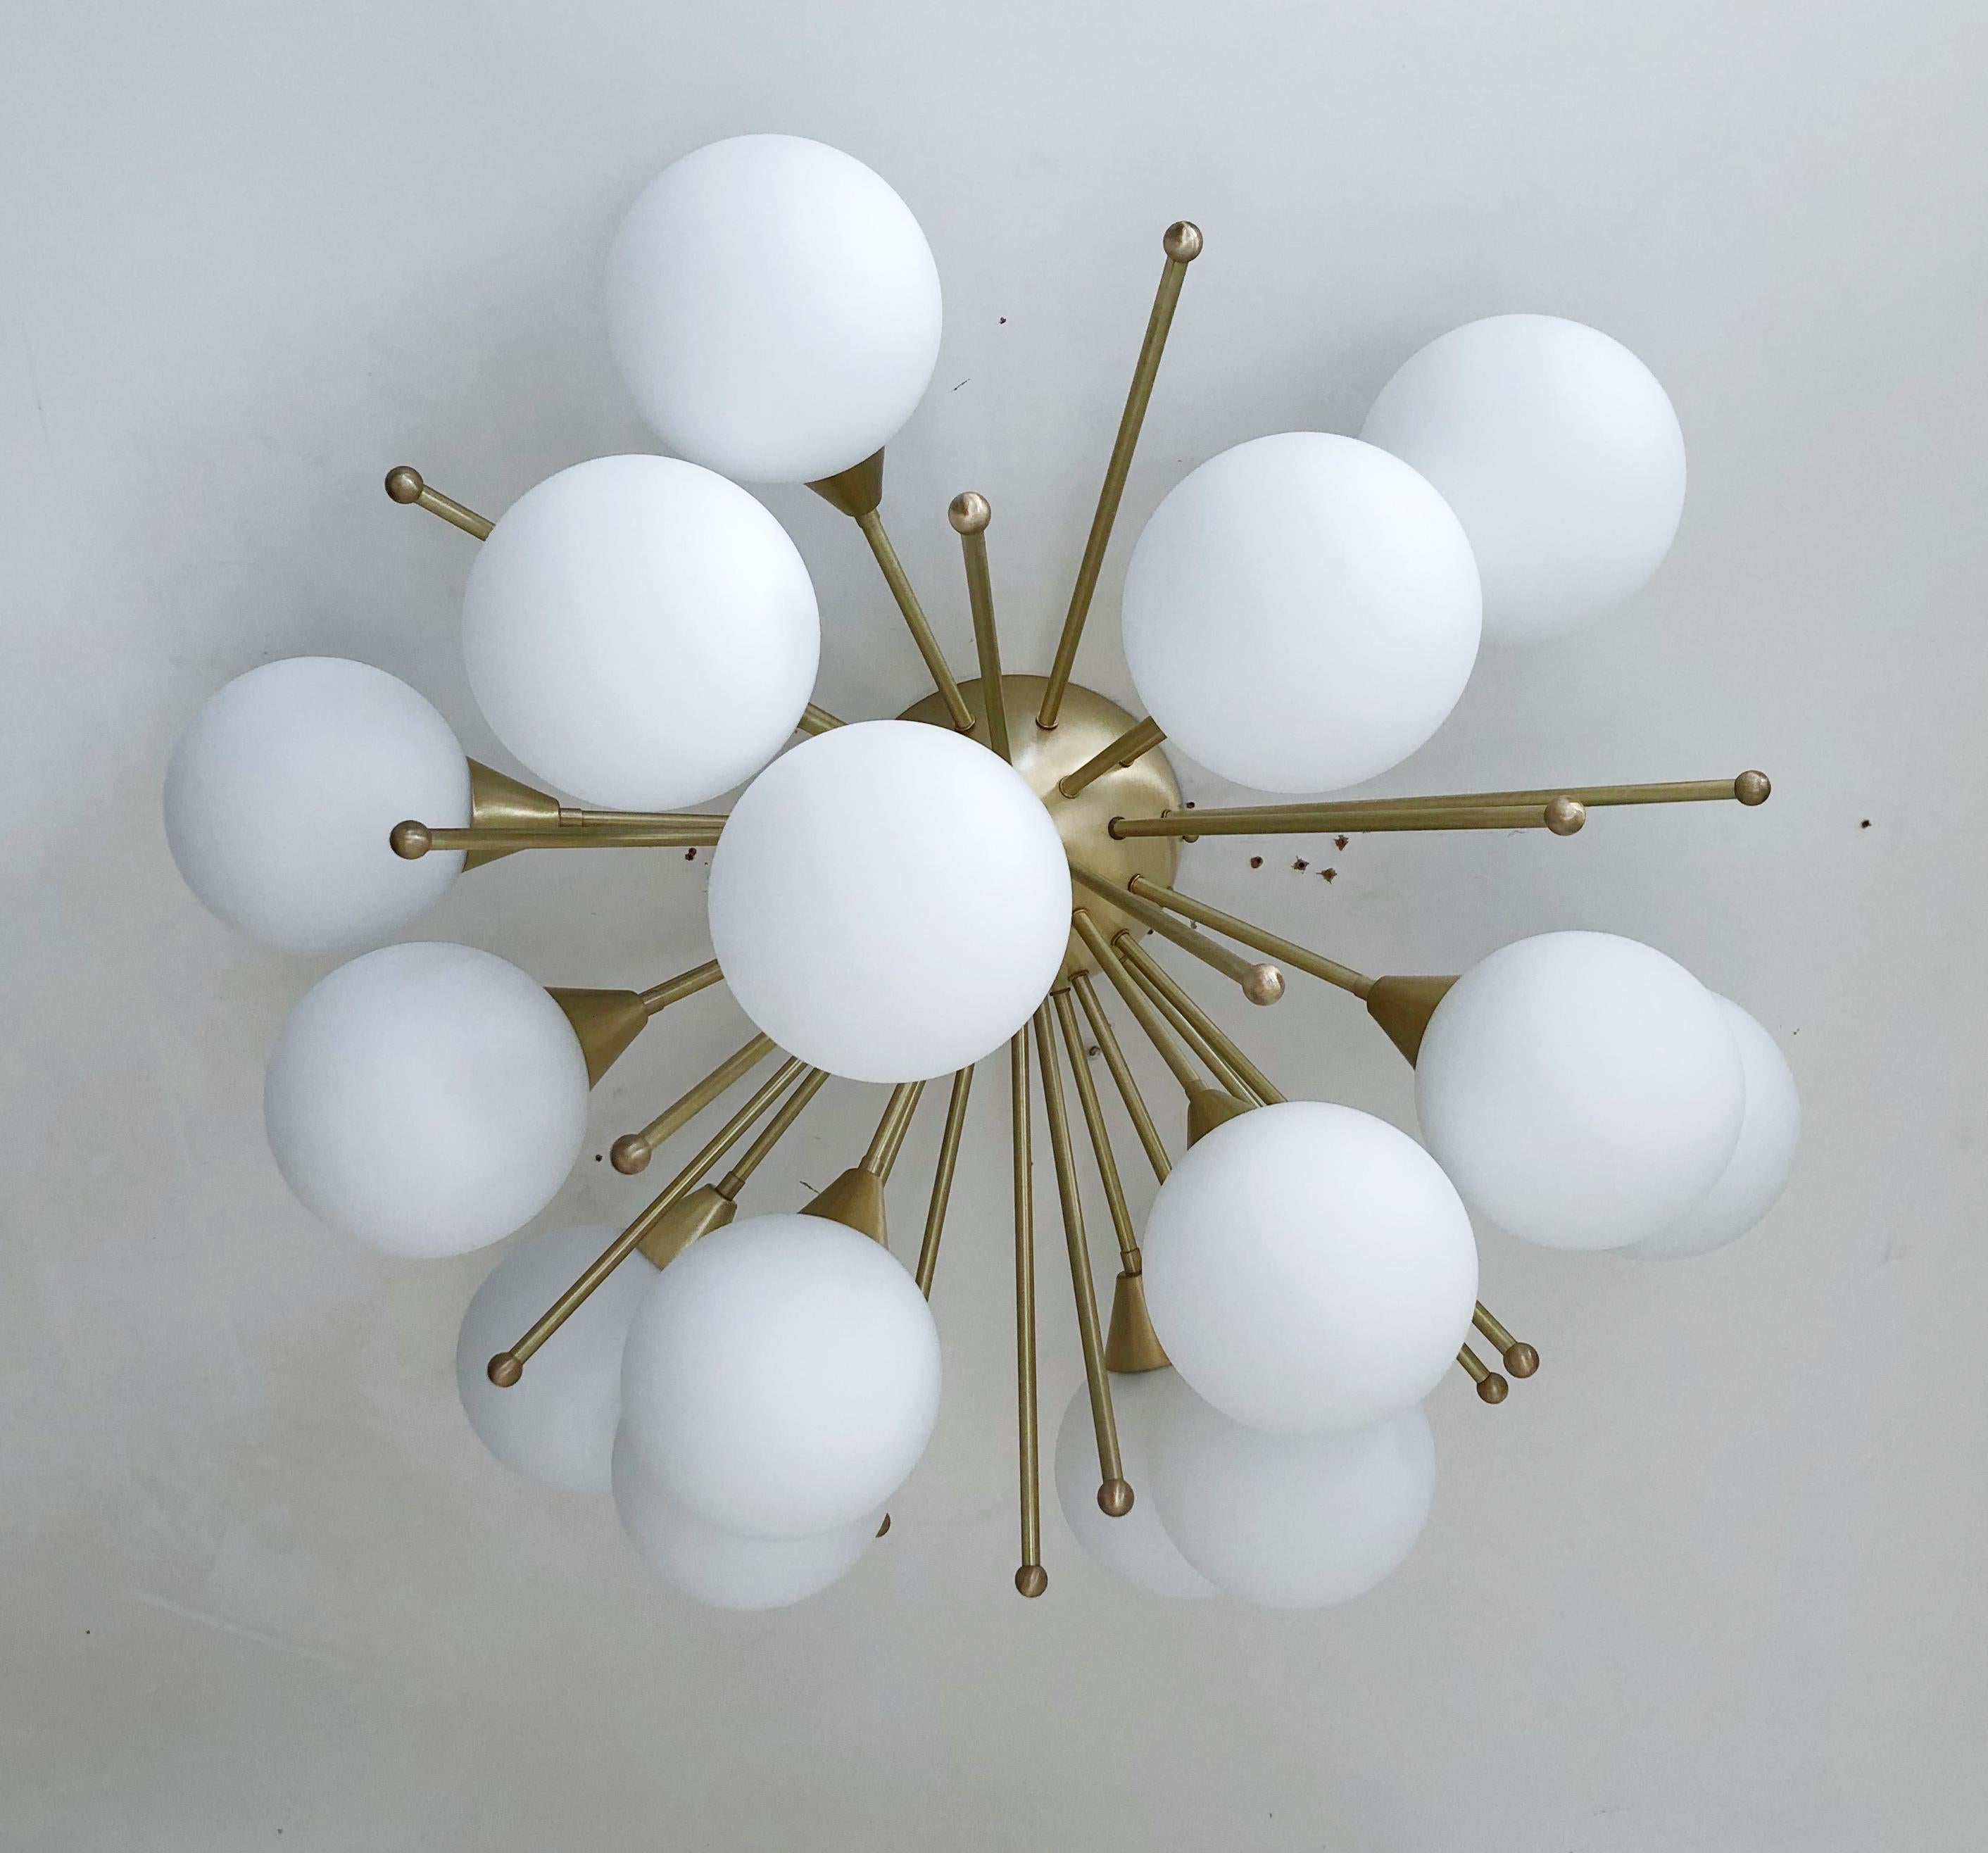 Italienischer Sputnik mit Murano-Glaskugeln, montiert auf einem massiven Messingrahmen
Entworfen von Fabio Bergomi / Hergestellt in Italien
15 Leuchten / Typ E12 oder E14 / max. 40W pro Stück
Durchmesser: 35,5 Zoll / Höhe: 18 Zoll
Nur auf Bestellung